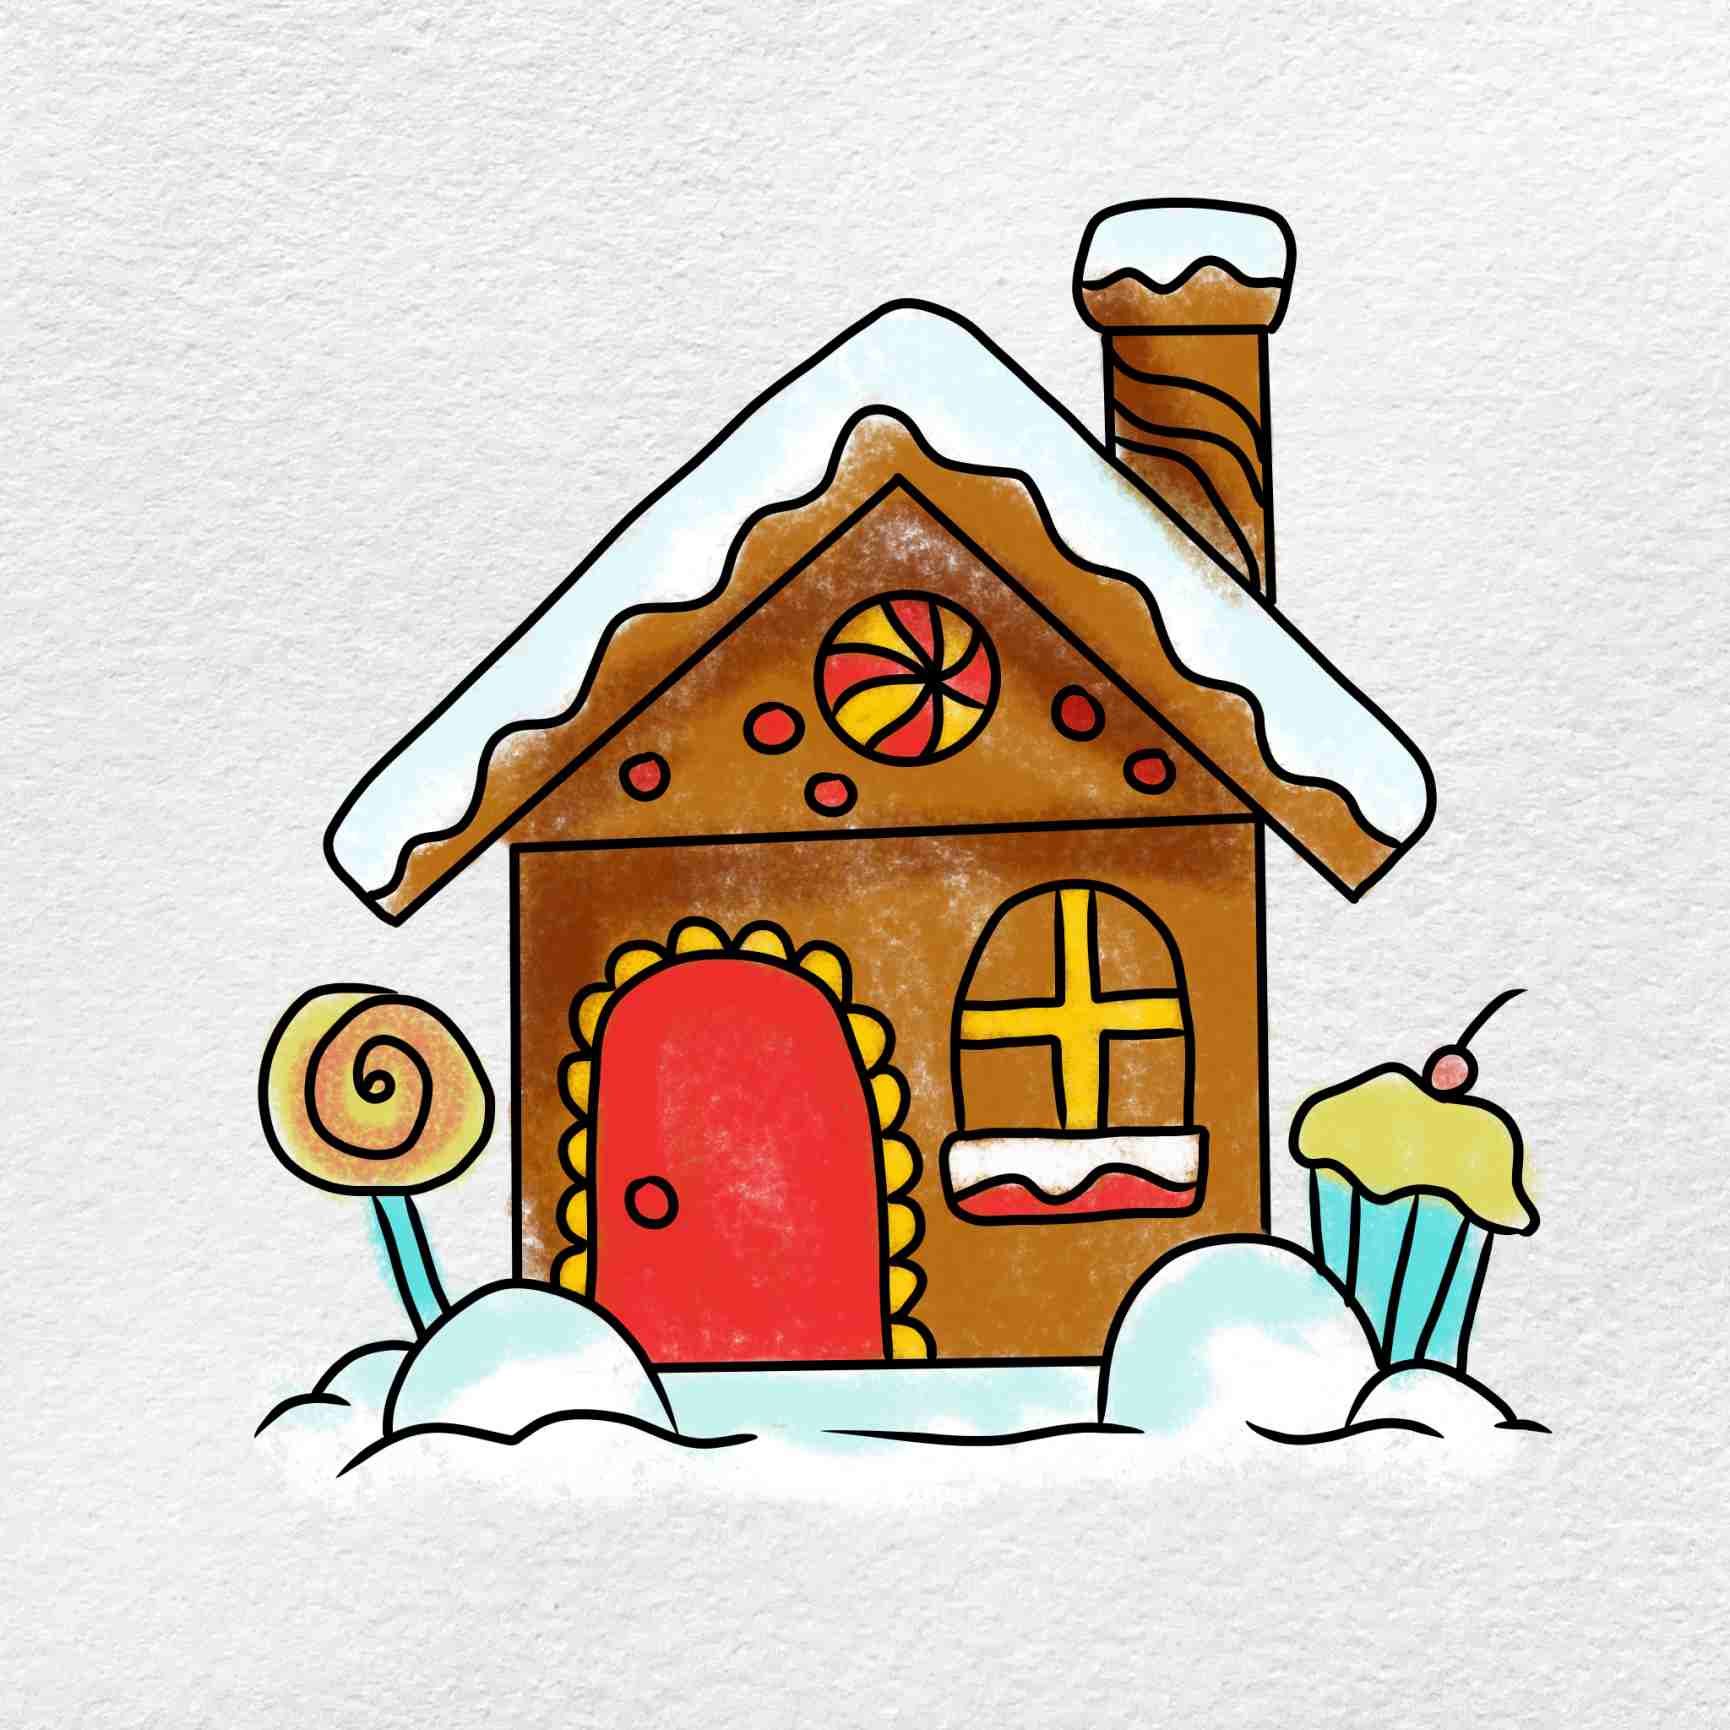 Ngôi nhà tuyết luôn là biểu tượng của mùa đông và giáng sinh. Hãy cùng chiêm ngưỡng bức tranh vẽ ngôi nhà tuyết đáng yêu này với những tiếng cười và sự bình yên trong tâm hồn.